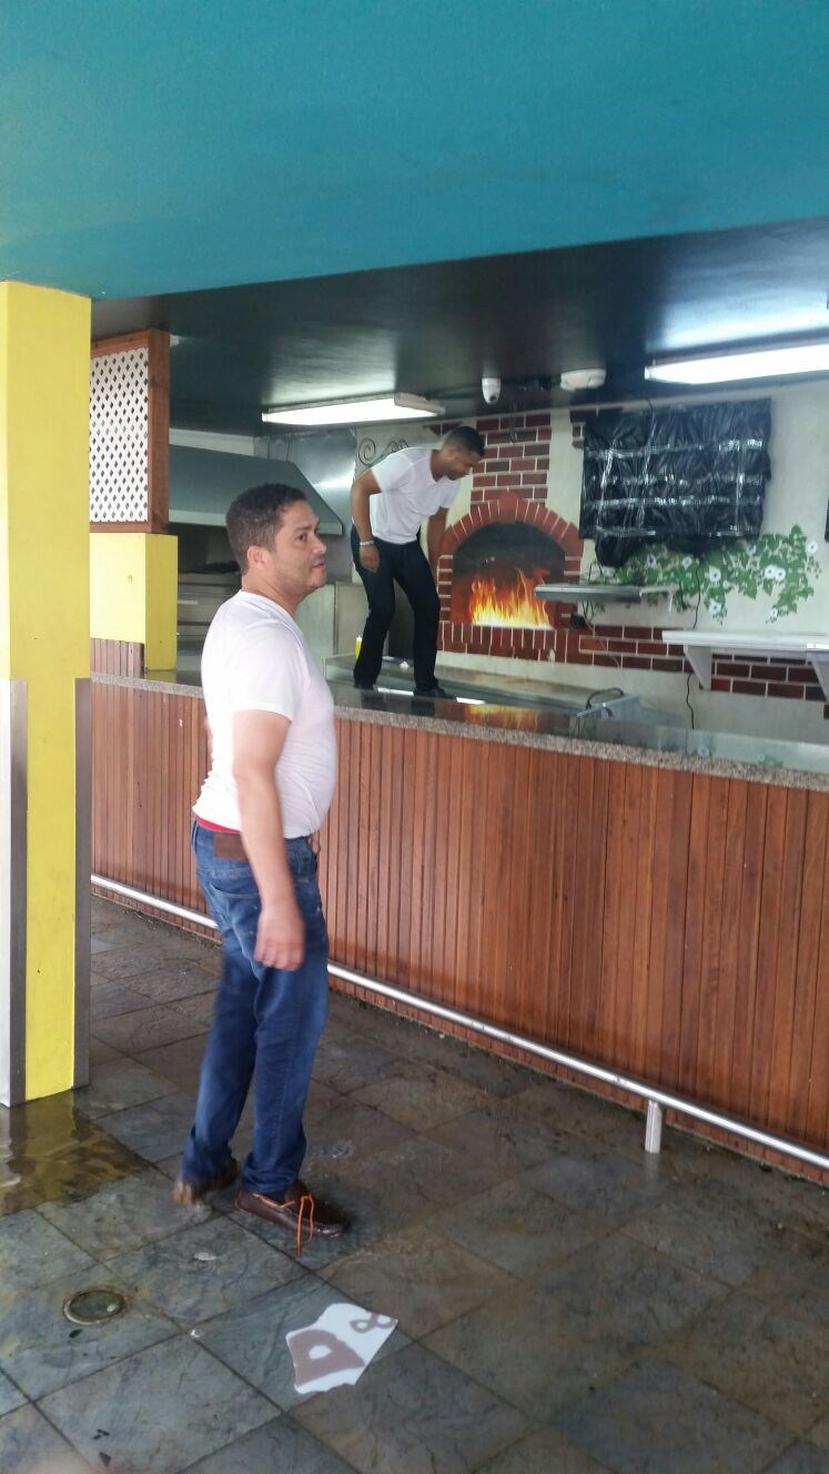 Francisco Jiménez, encargado del negocio Pizza City en la avenida Isla Verde, llegó pasado el mediodía de hoy para verificar los daños y reiniciar operaciones.

